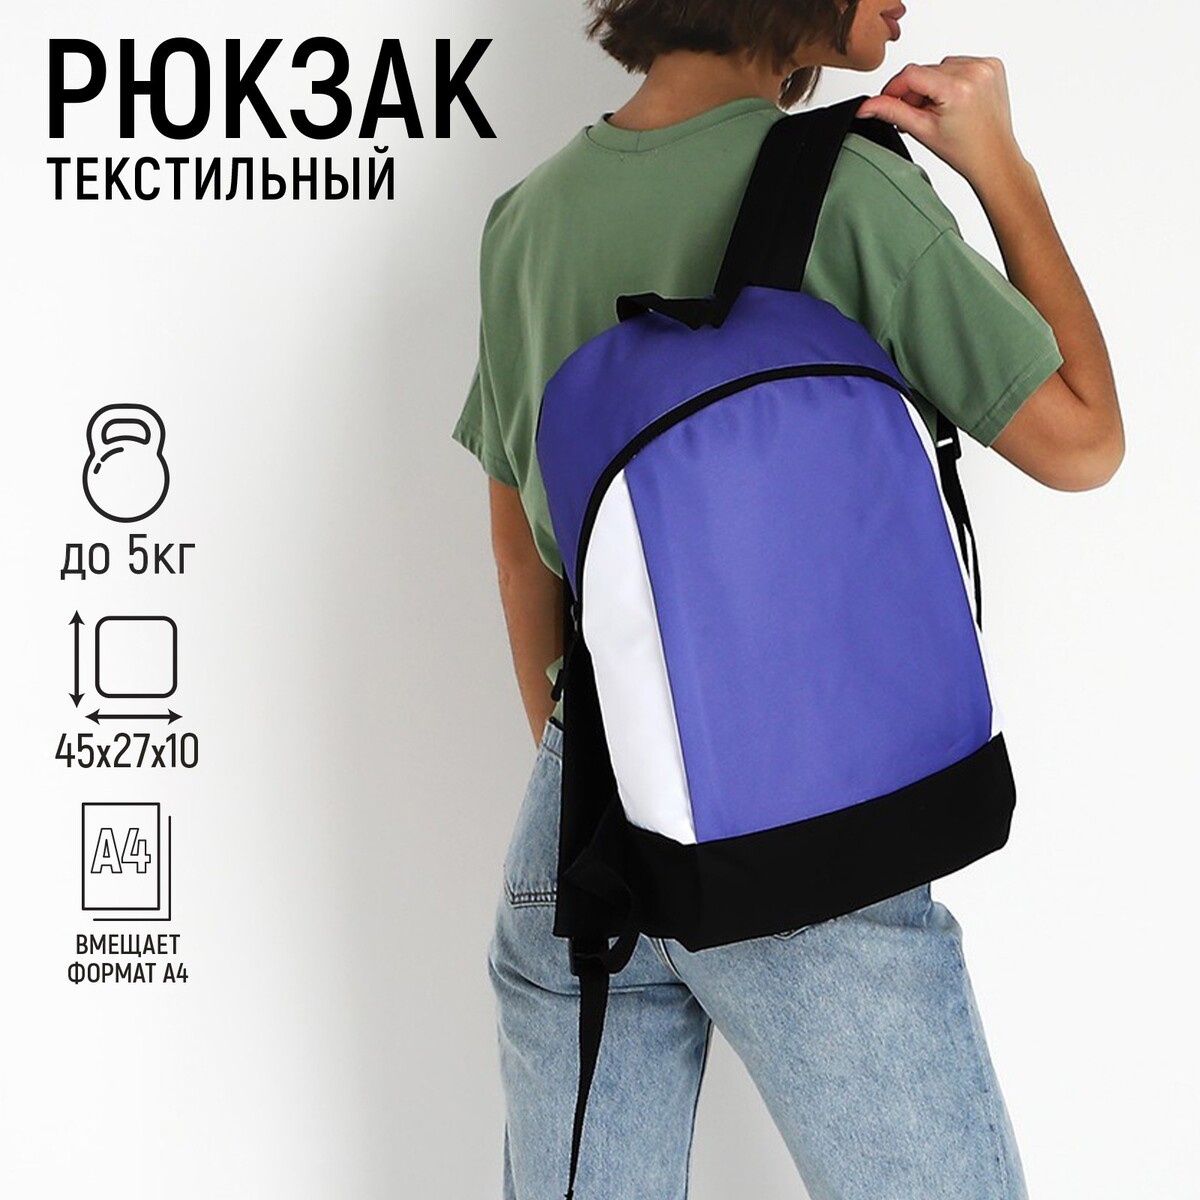 Рюкзак текстильный 46х30х10 см, вертикальный карман, цвет фиолетовый рюкзак молодежный на молнии наружный карман фиолетовый